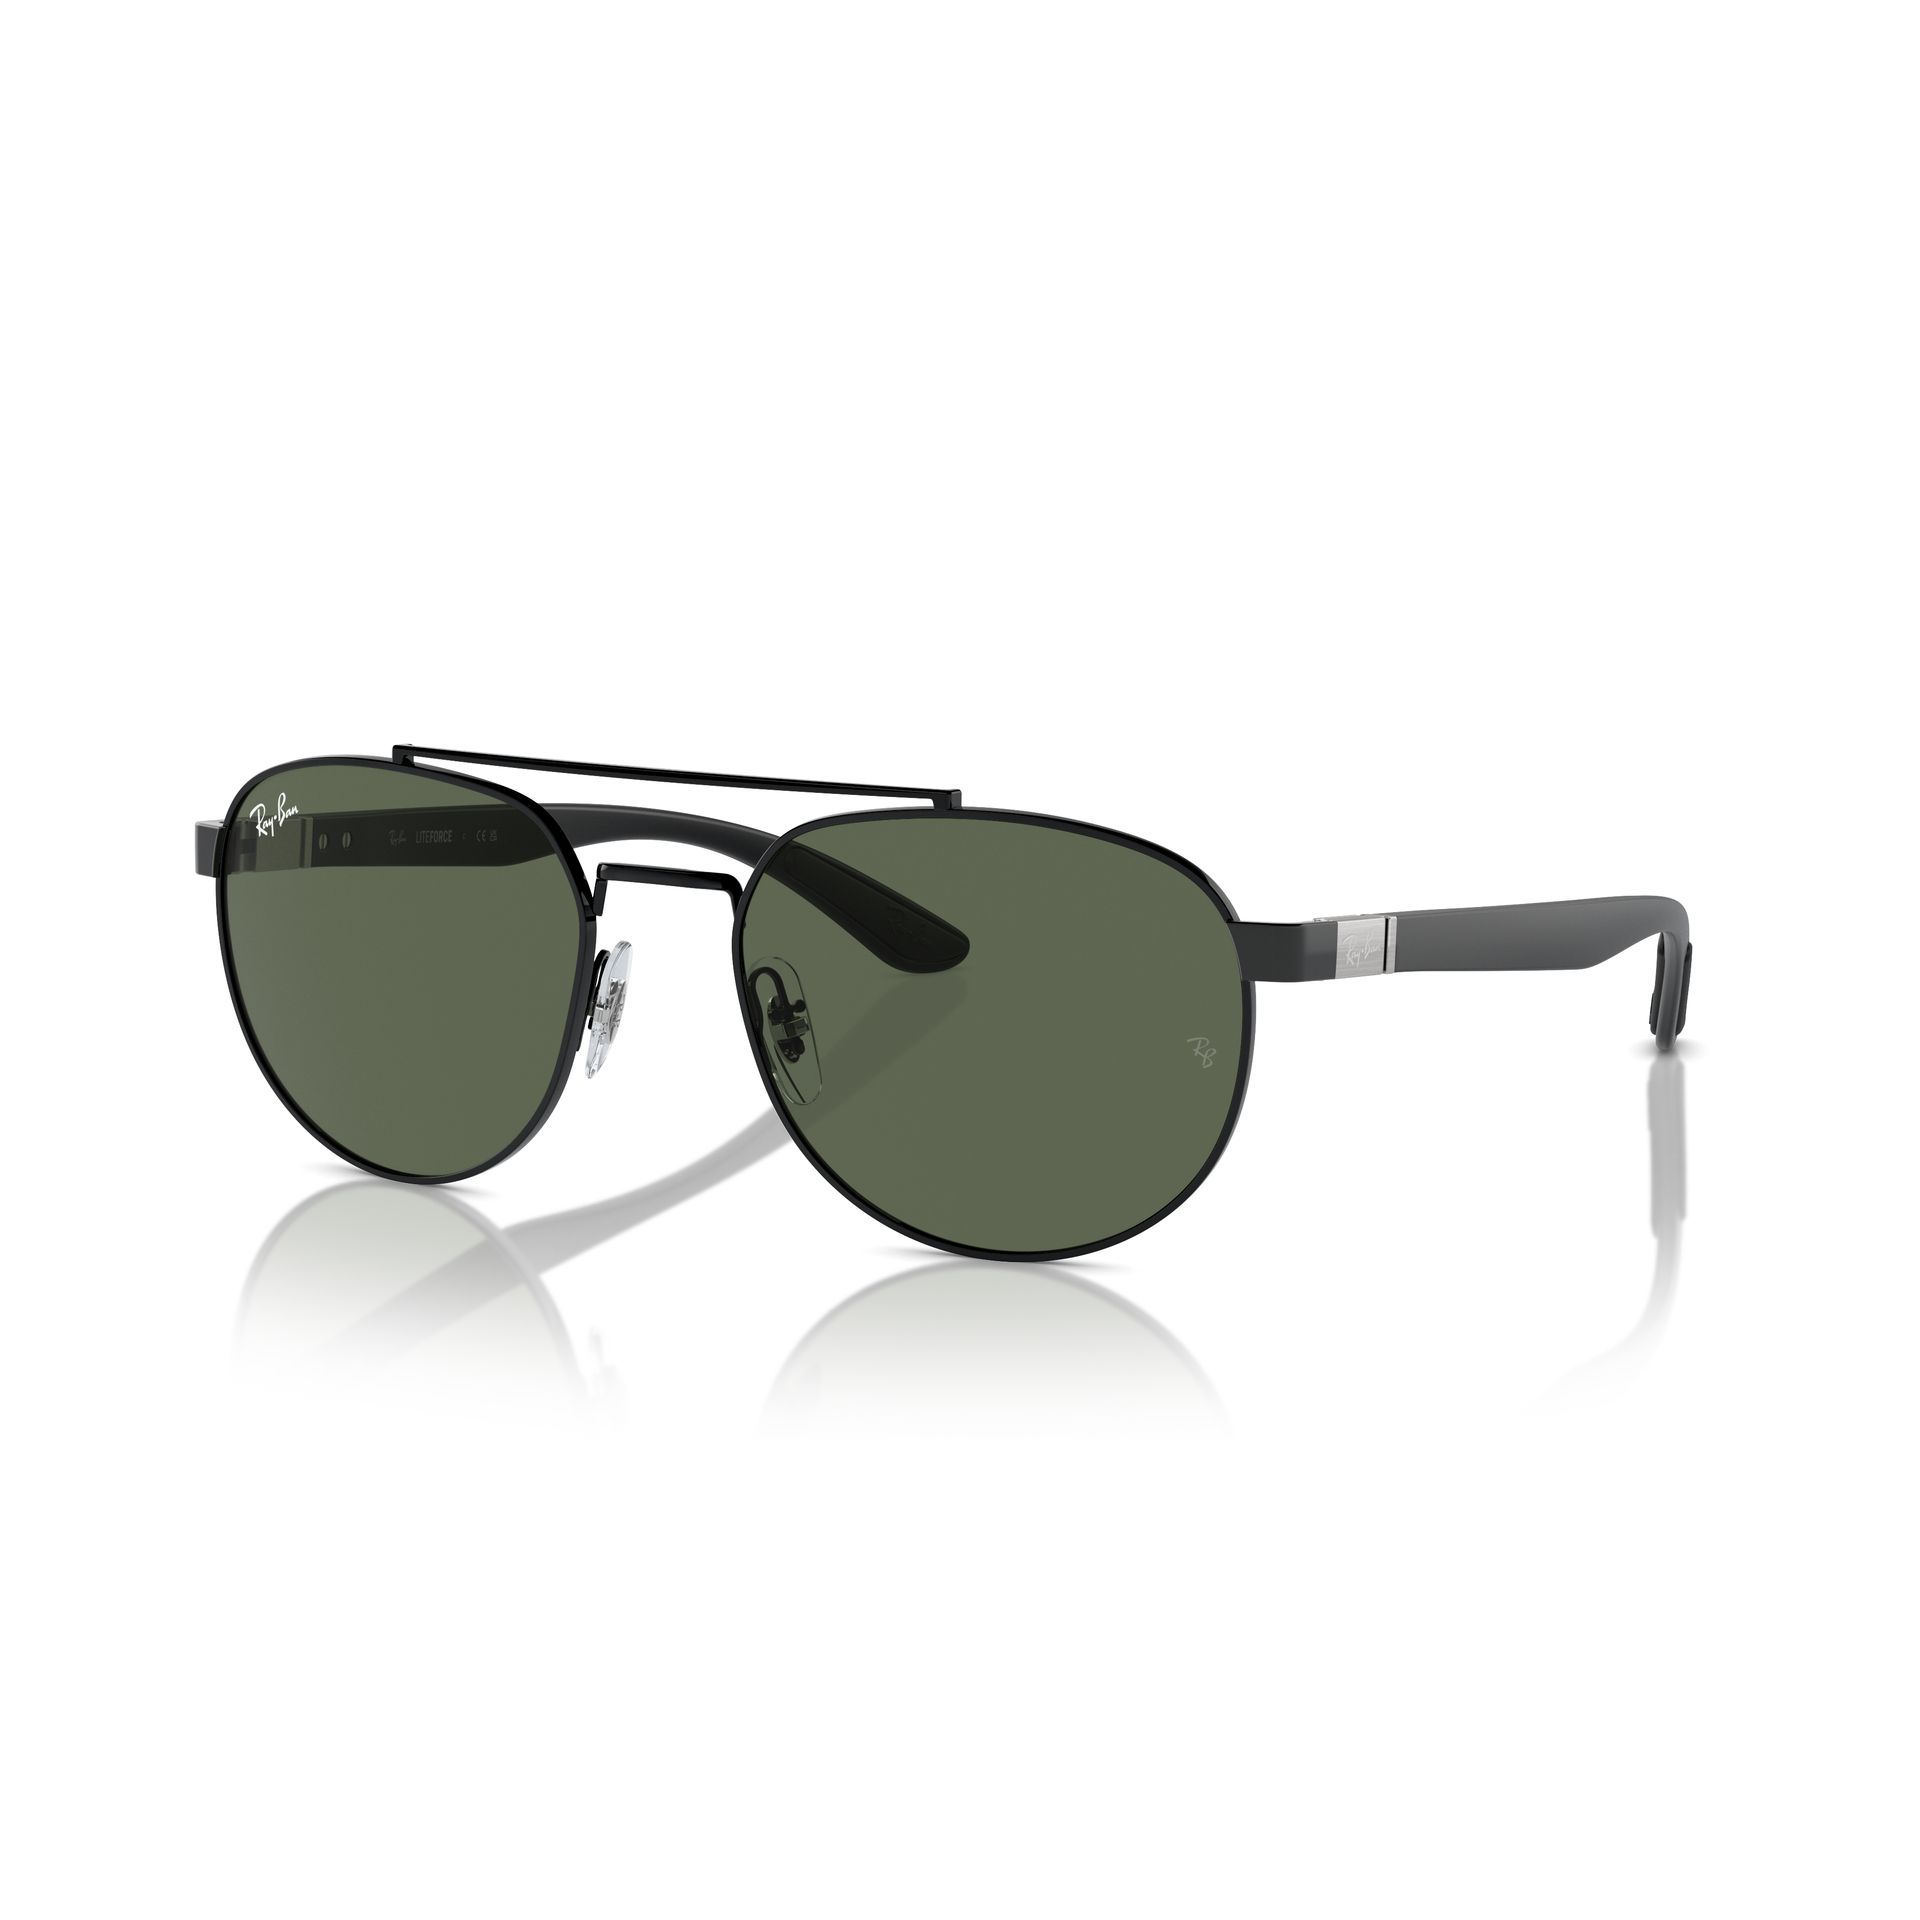 0RB3736 Pilot Sunglasses 002 71 - size 56